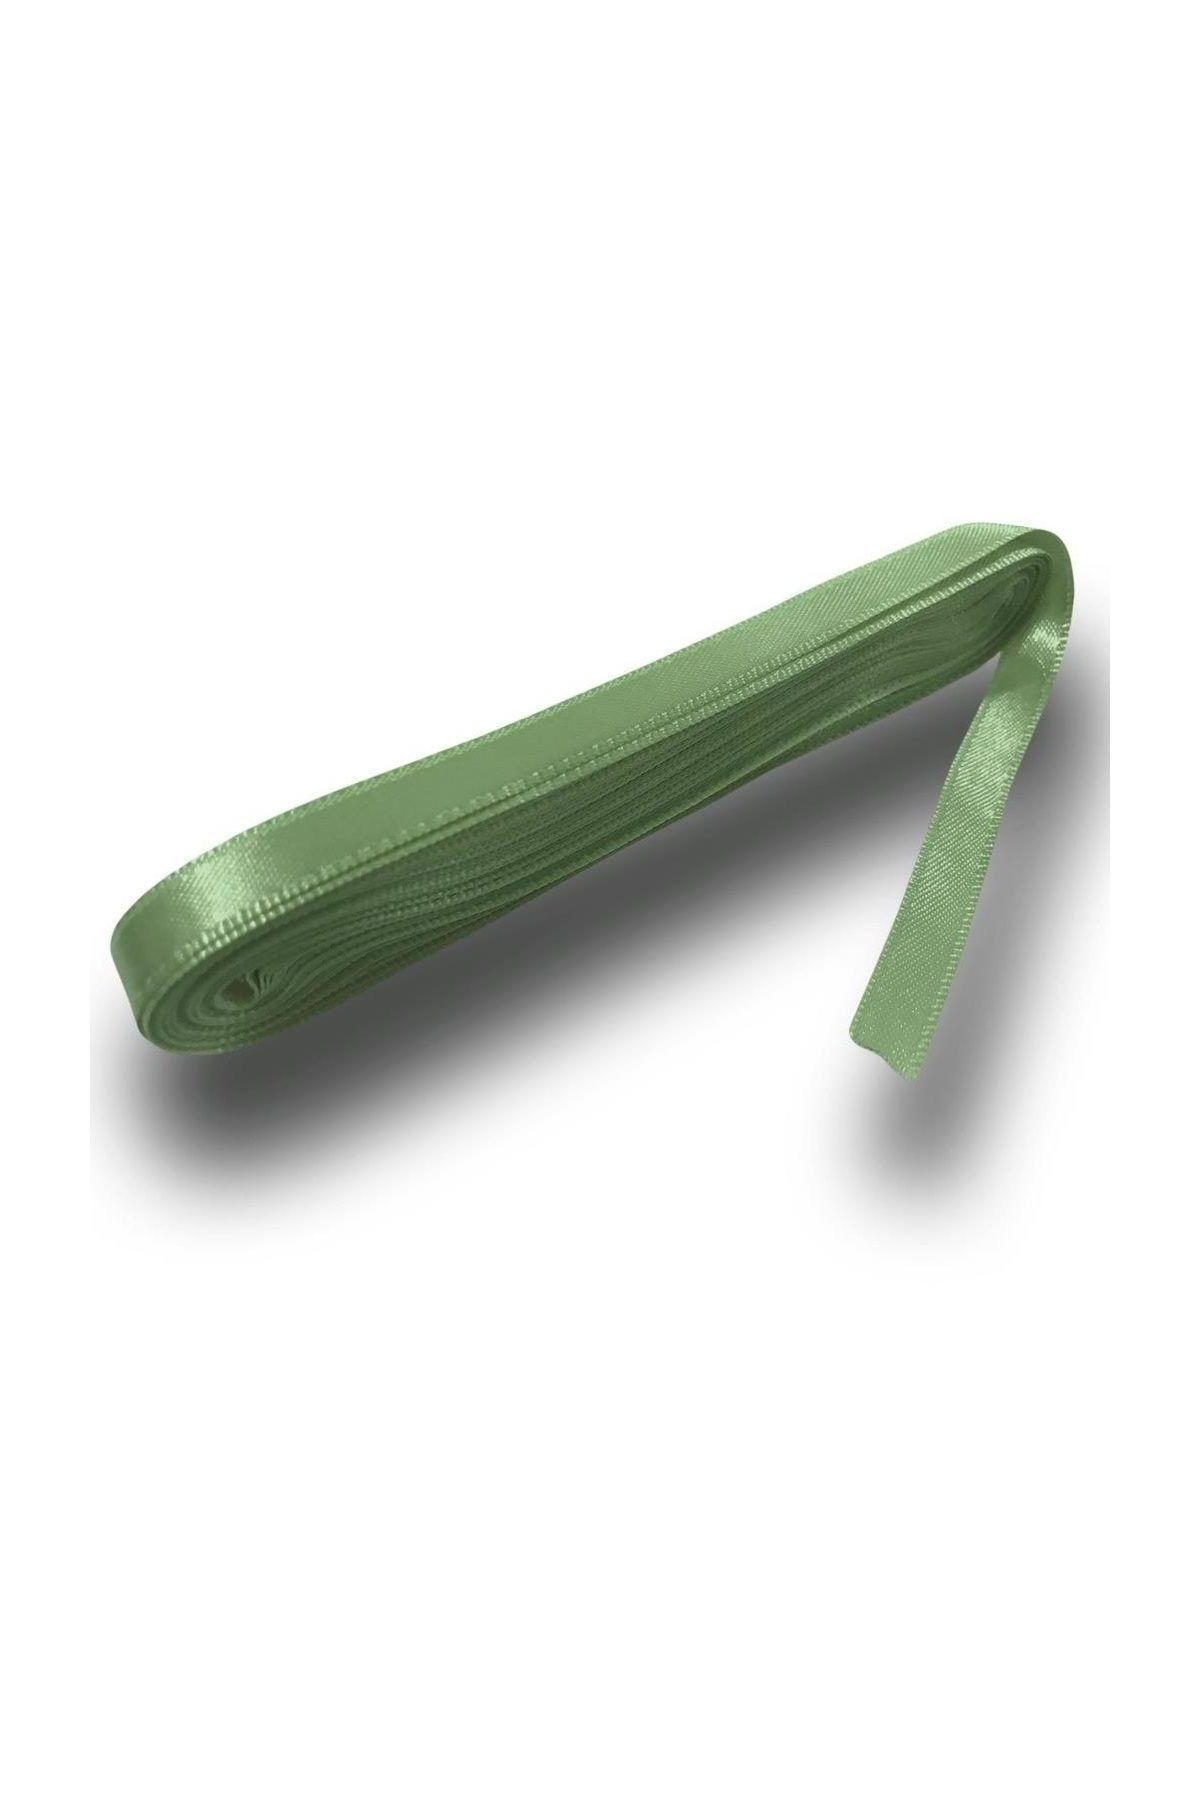 Parti Dolabı 1 Adet 1cm Mint Yeşili Renginde Kurdele, 10 m Uzunluğunda Kurdela